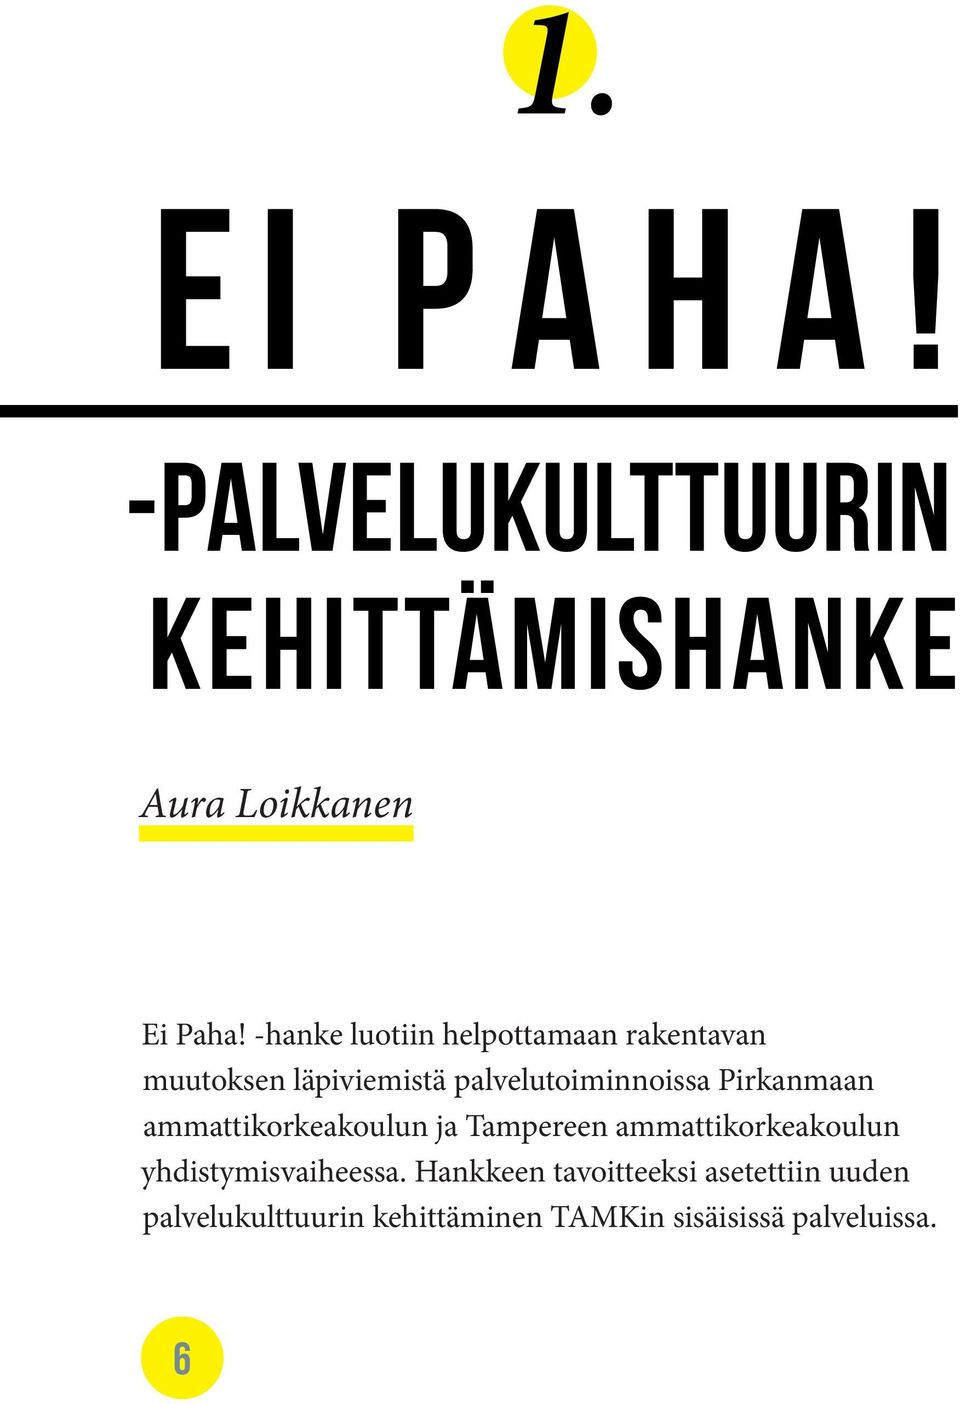 Pirkanmaan ammattikorkeakoulun ja Tampereen ammattikorkeakoulun yhdistymisvaiheessa.